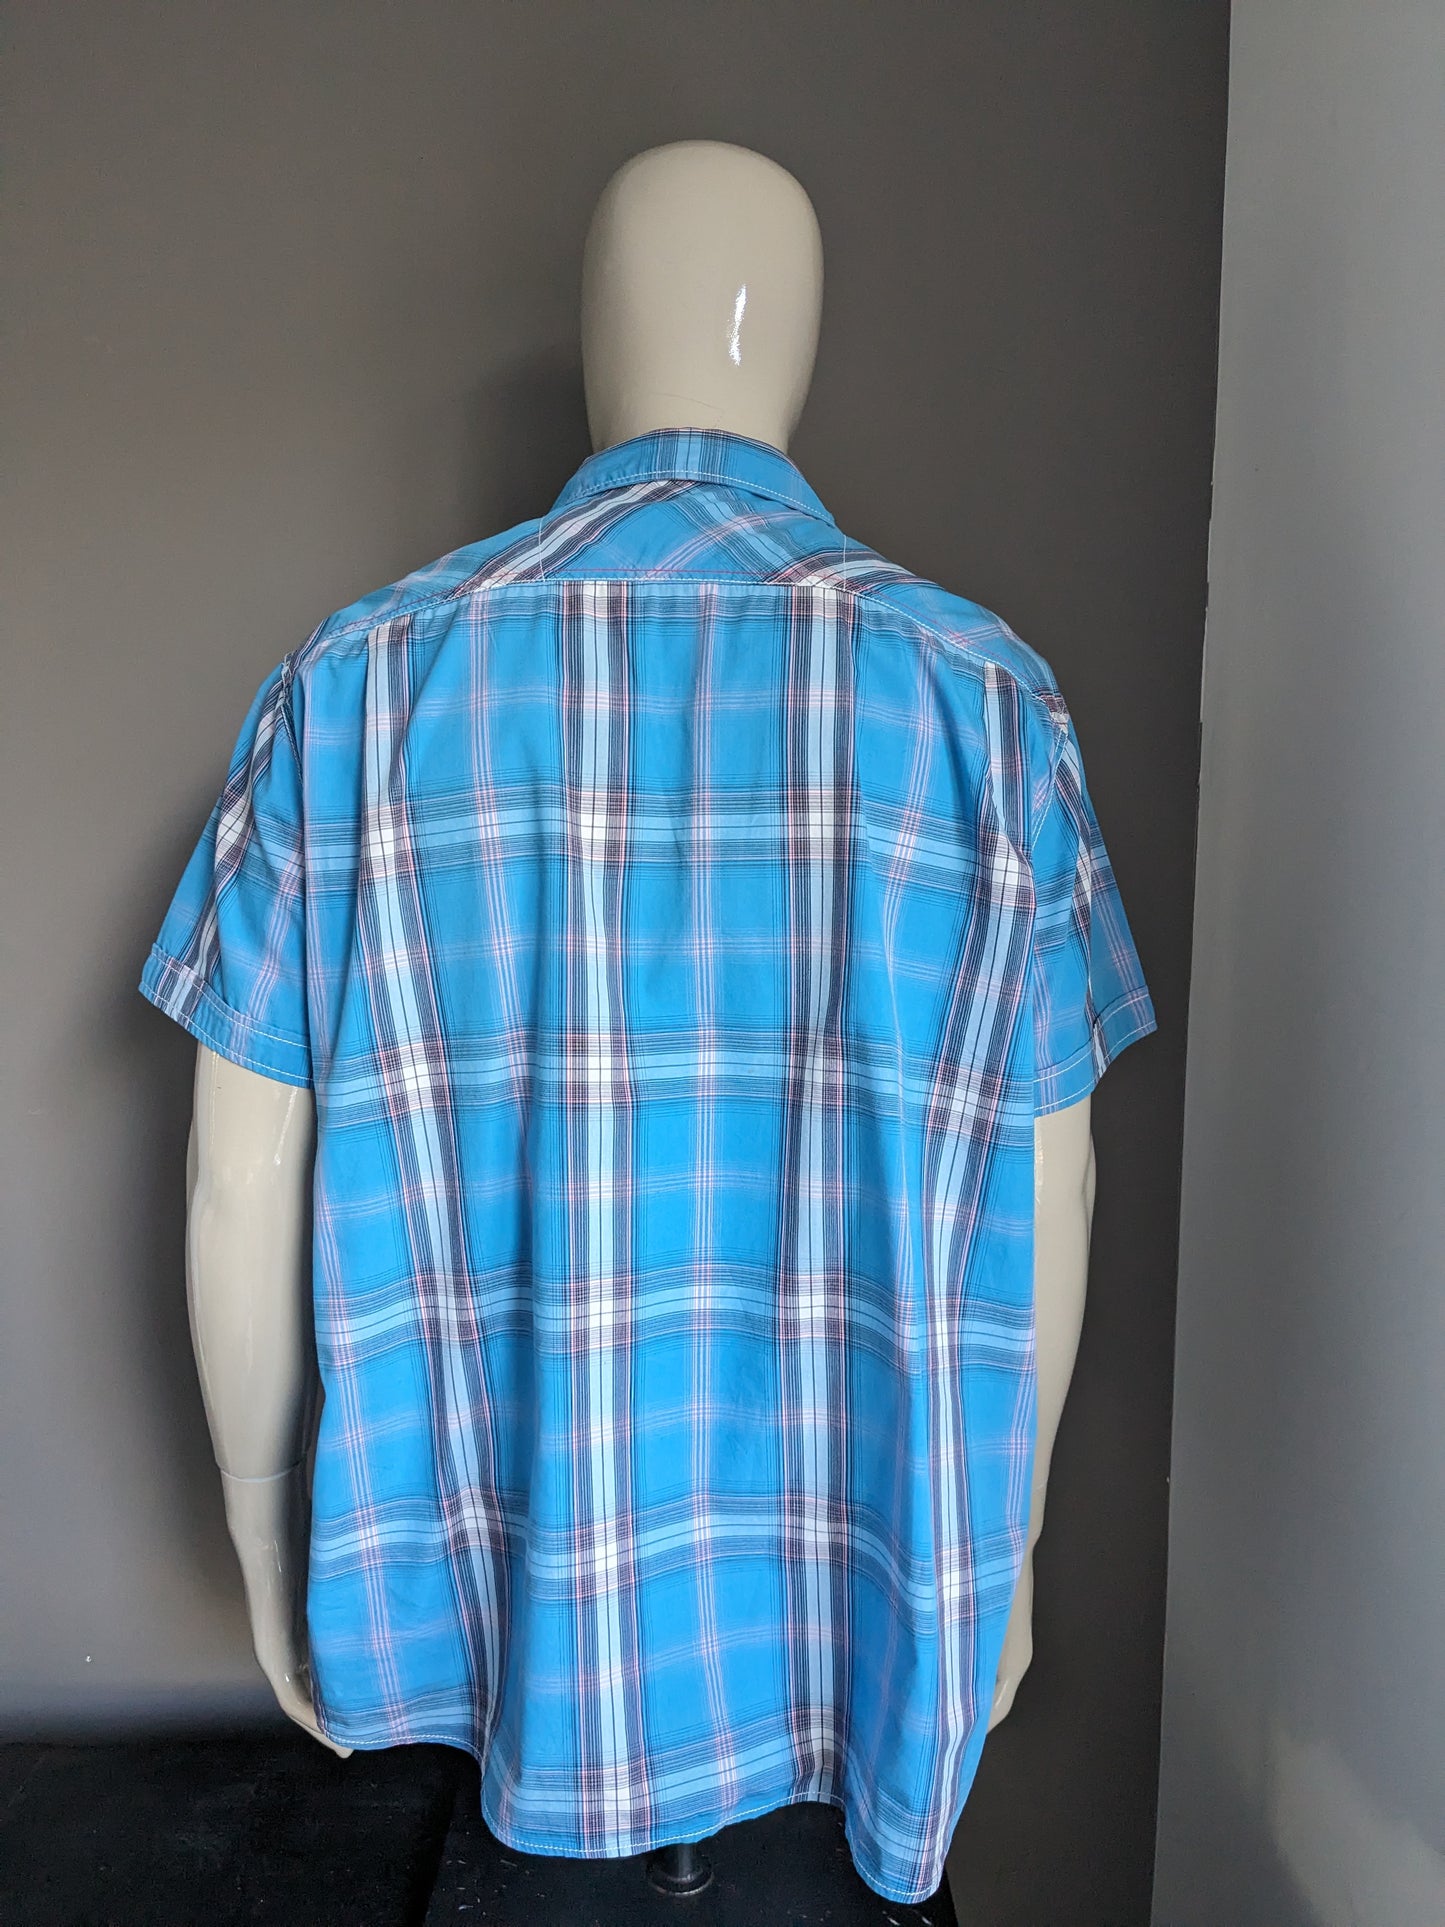 Twinlife Shirt Short Maniche. A scacchi bianchi rosa blu. Dimensione 4xl / xxxxl.